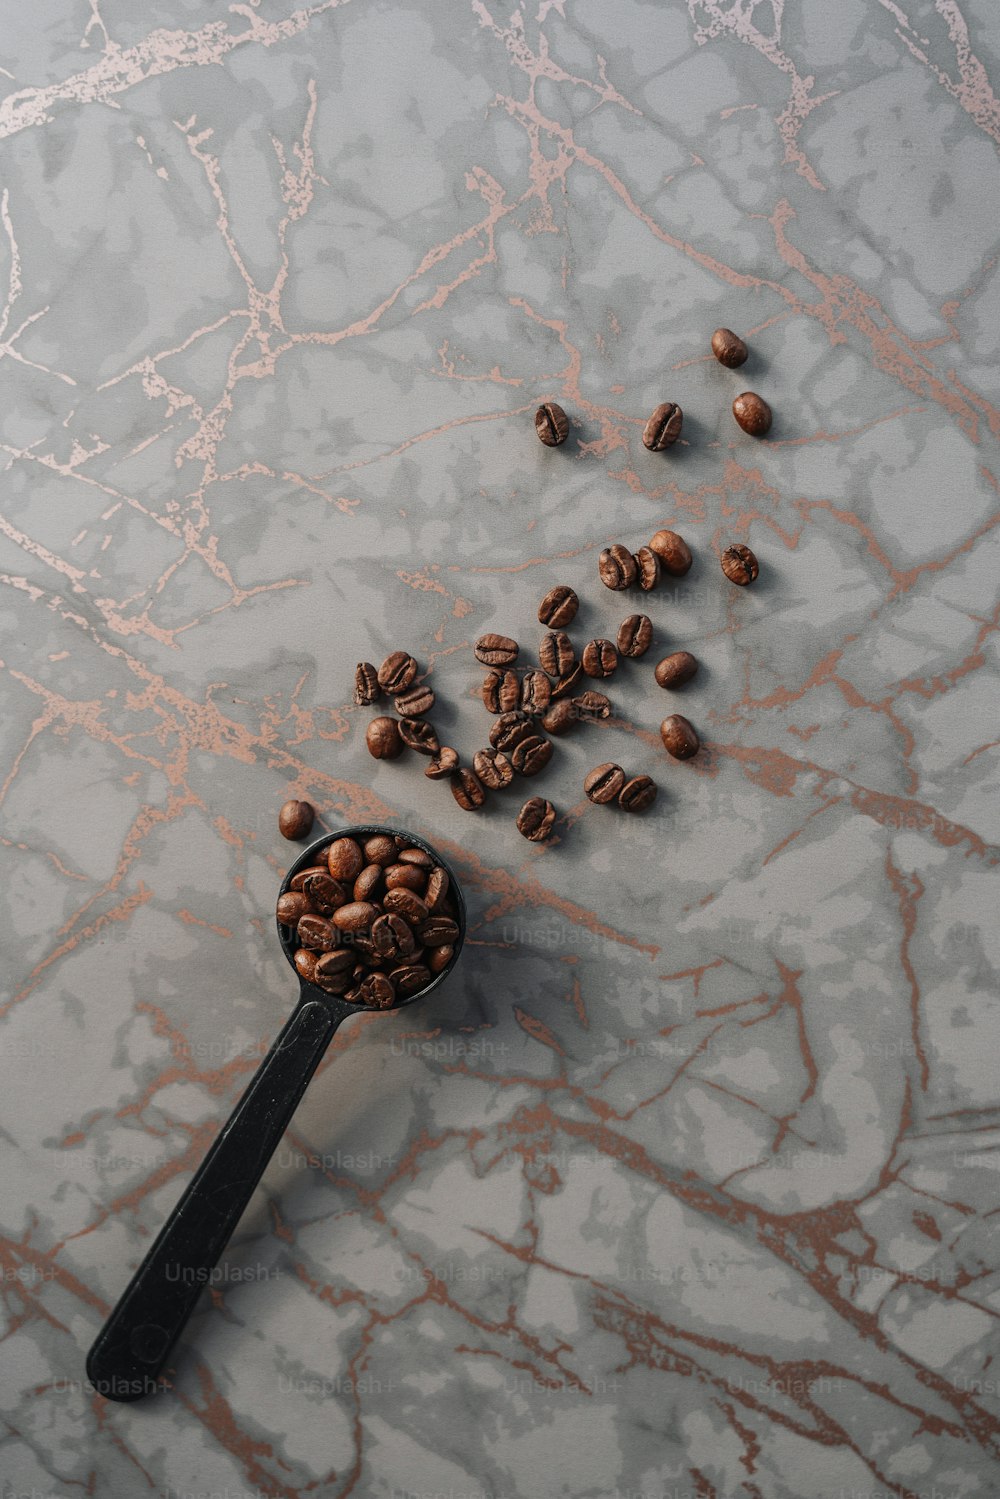 大理石の表面にコーヒー豆でいっぱいのスプーン